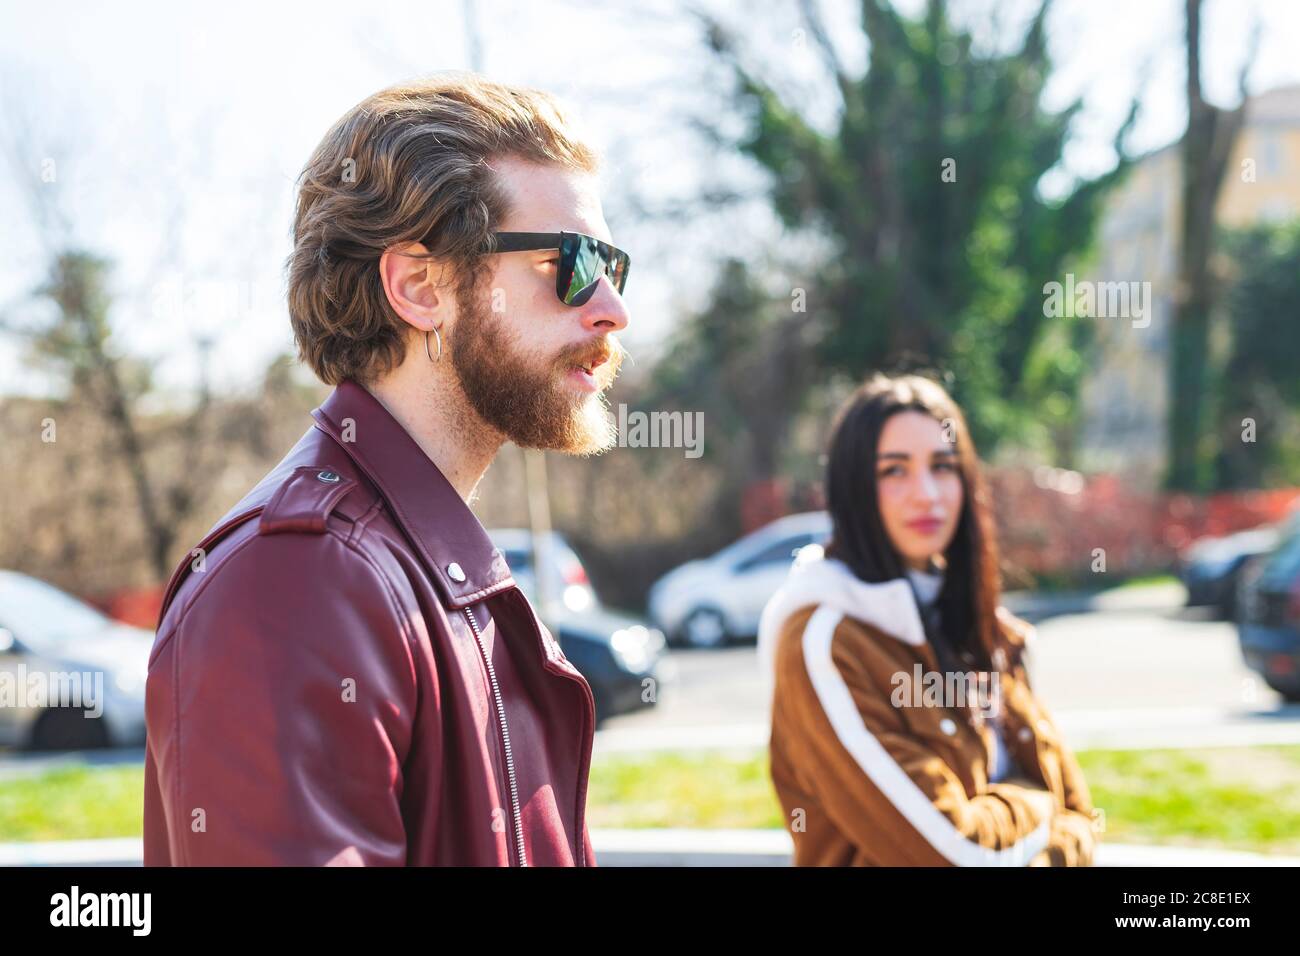 Nahaufnahme eines Mannes mit Sonnenbrille, der mit seiner Freundin in der Stadt unterwegs ist Stockfoto